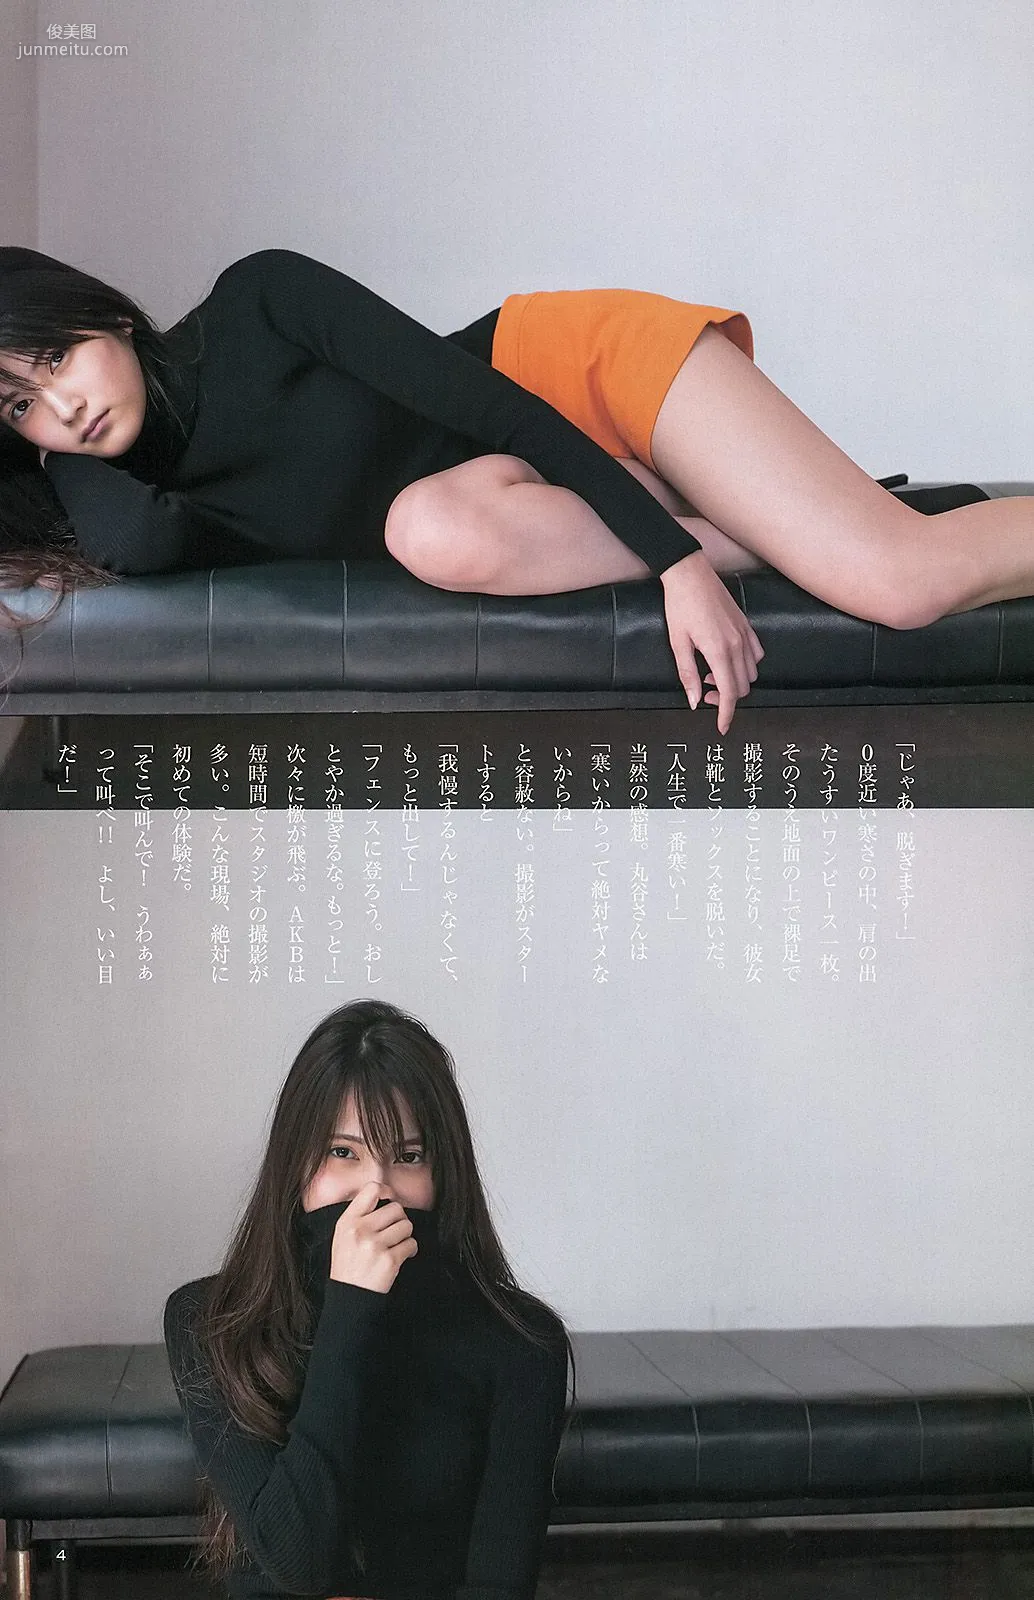 小嶋陽菜 入山杏奈 菊地翔子 [Weekly Young Jump] 2013年No.13 写真杂志12